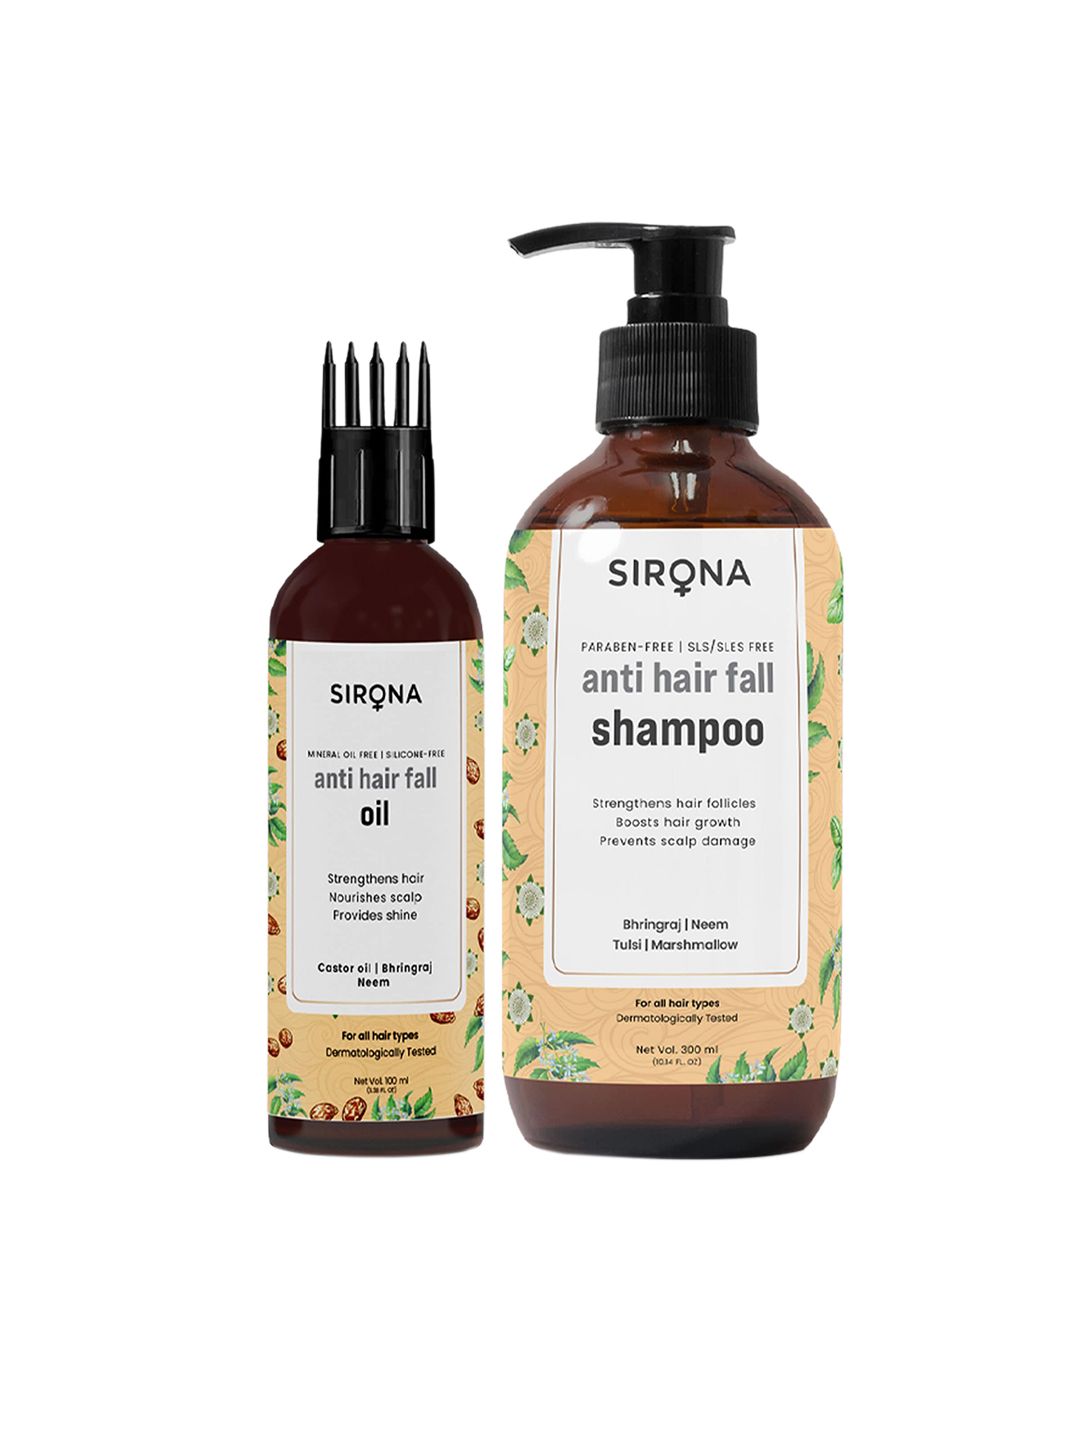 Sirona Anti Hair Fall Shampoo & Oil Combo Price in India